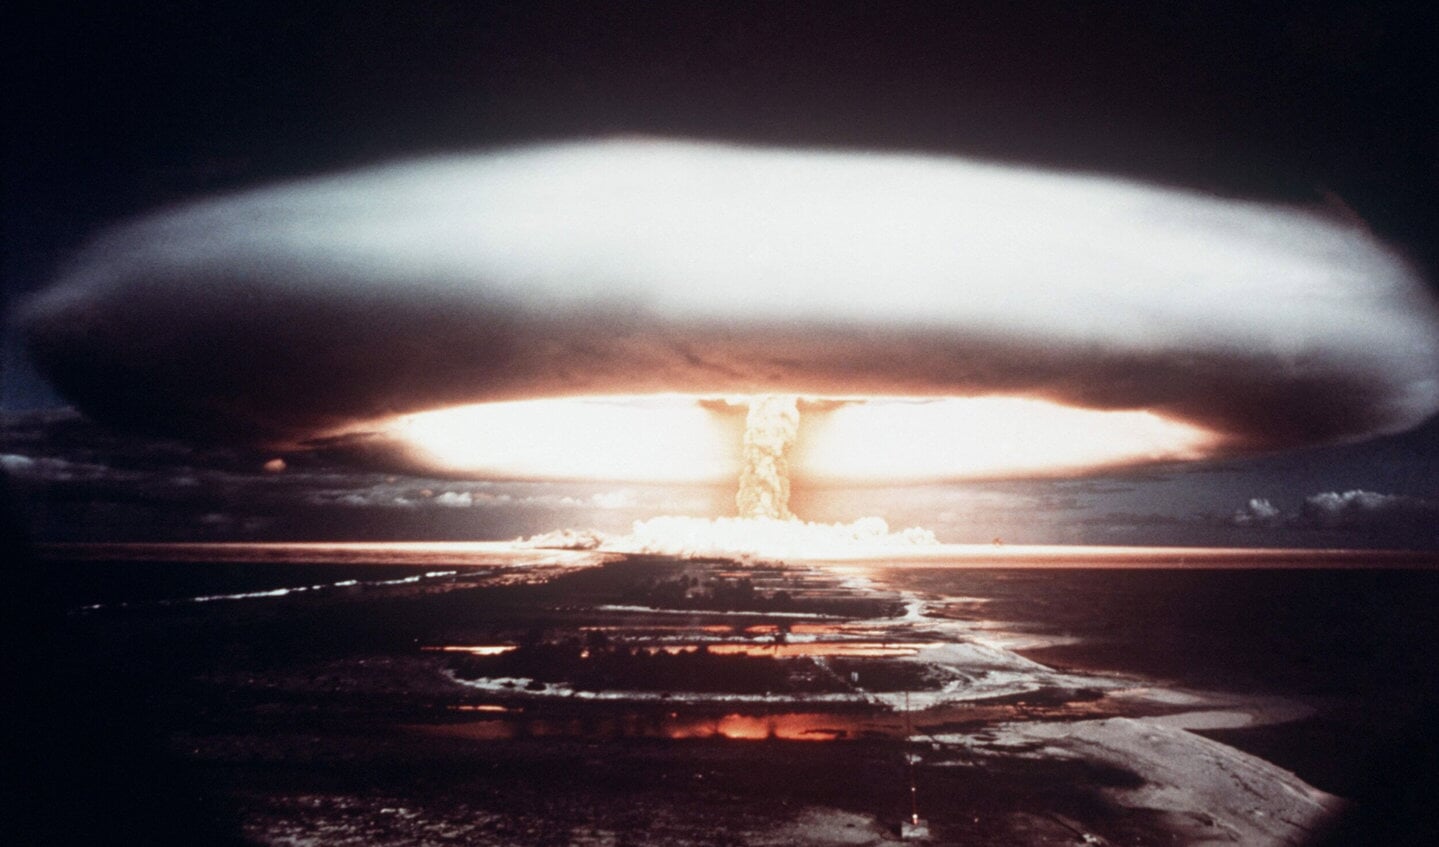 Rusland overvejer, om det skal træde ud af FN-traktaten, der forbyder prøvesprængninger af atomvåben. Billedet viser en fransk atomprøvesprængning ved Mururoa-atollen i det sydlige Stillehav. Foto: